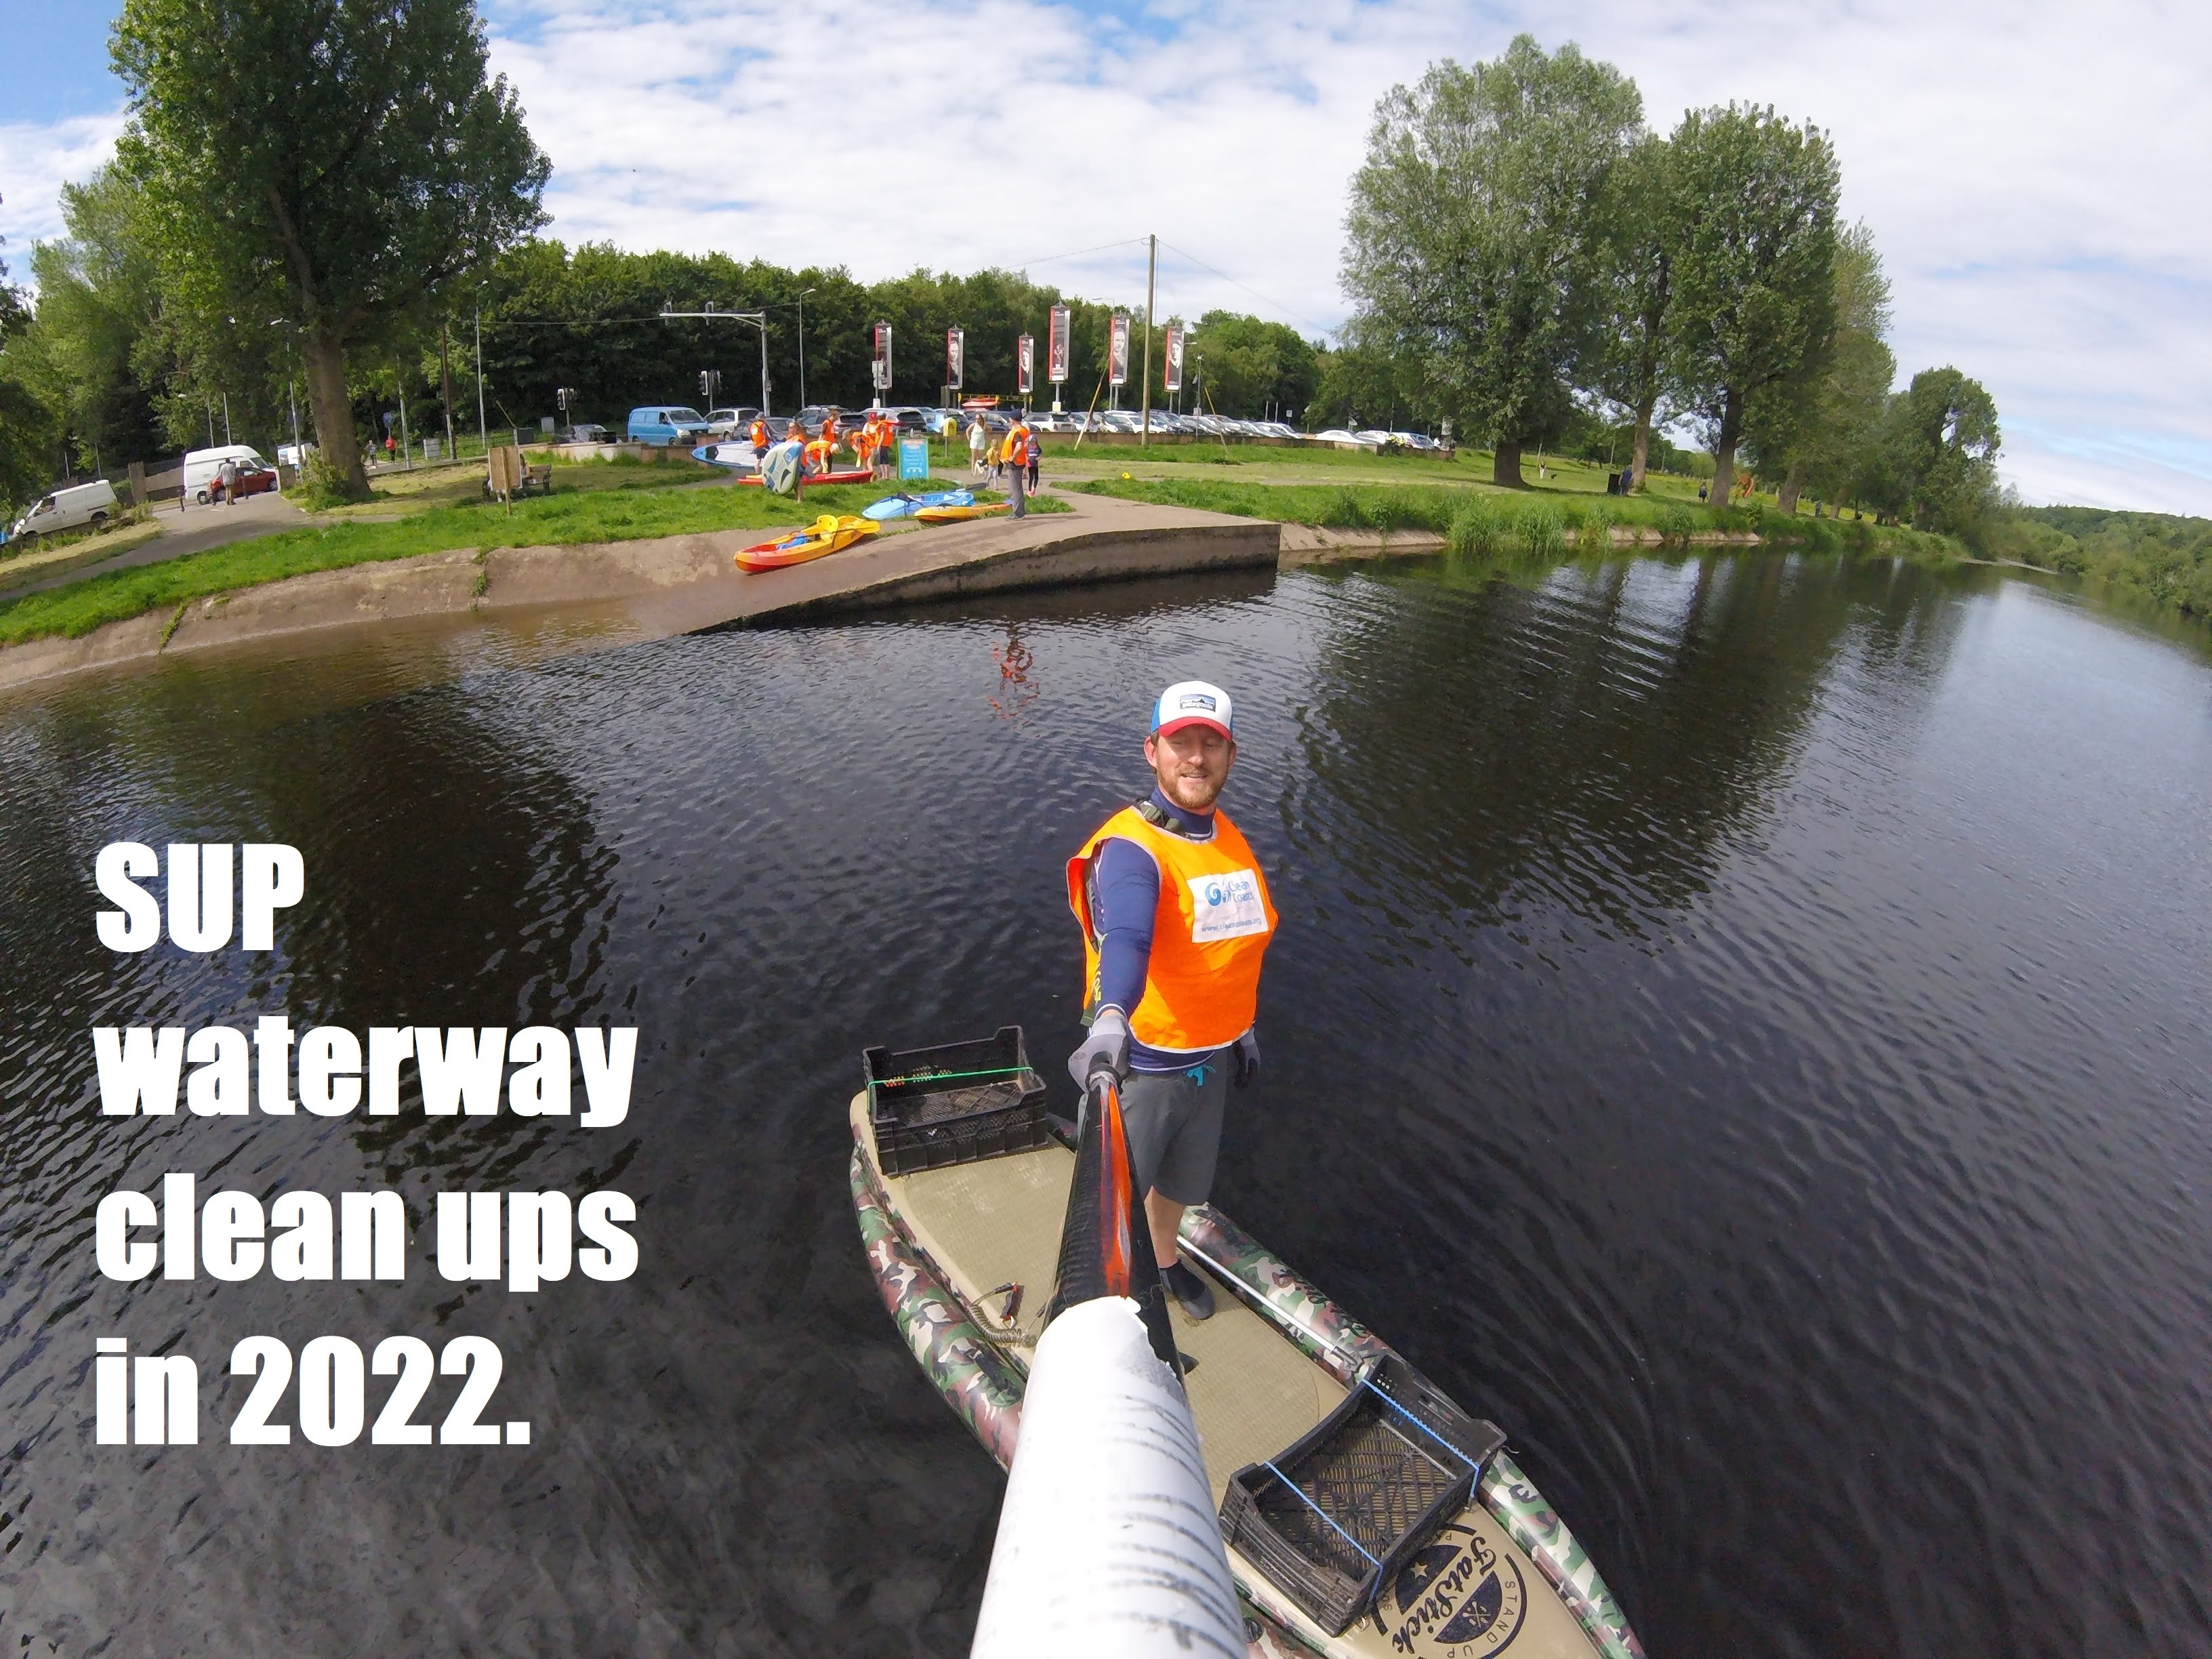 SUP waterway clean ups in 2022.